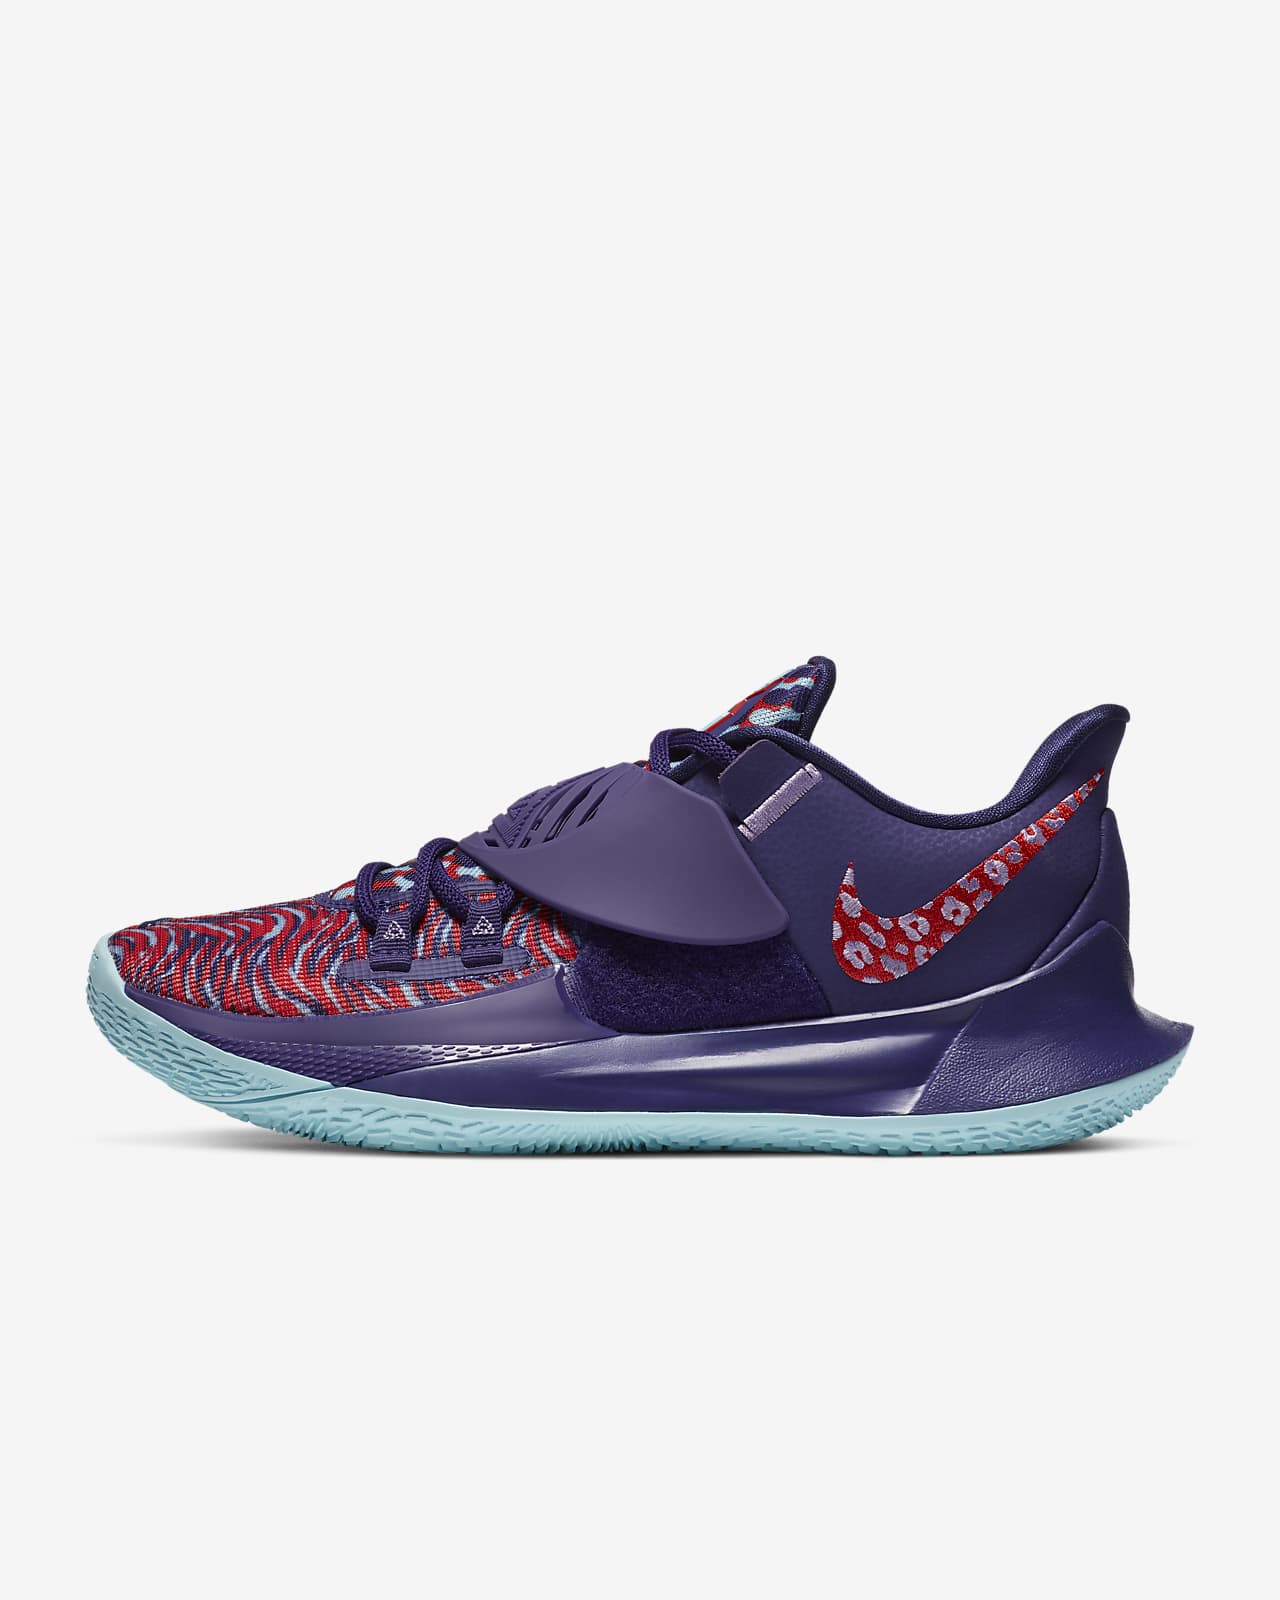 Kyrie Low 3 Basketball Shoe. Nike LU